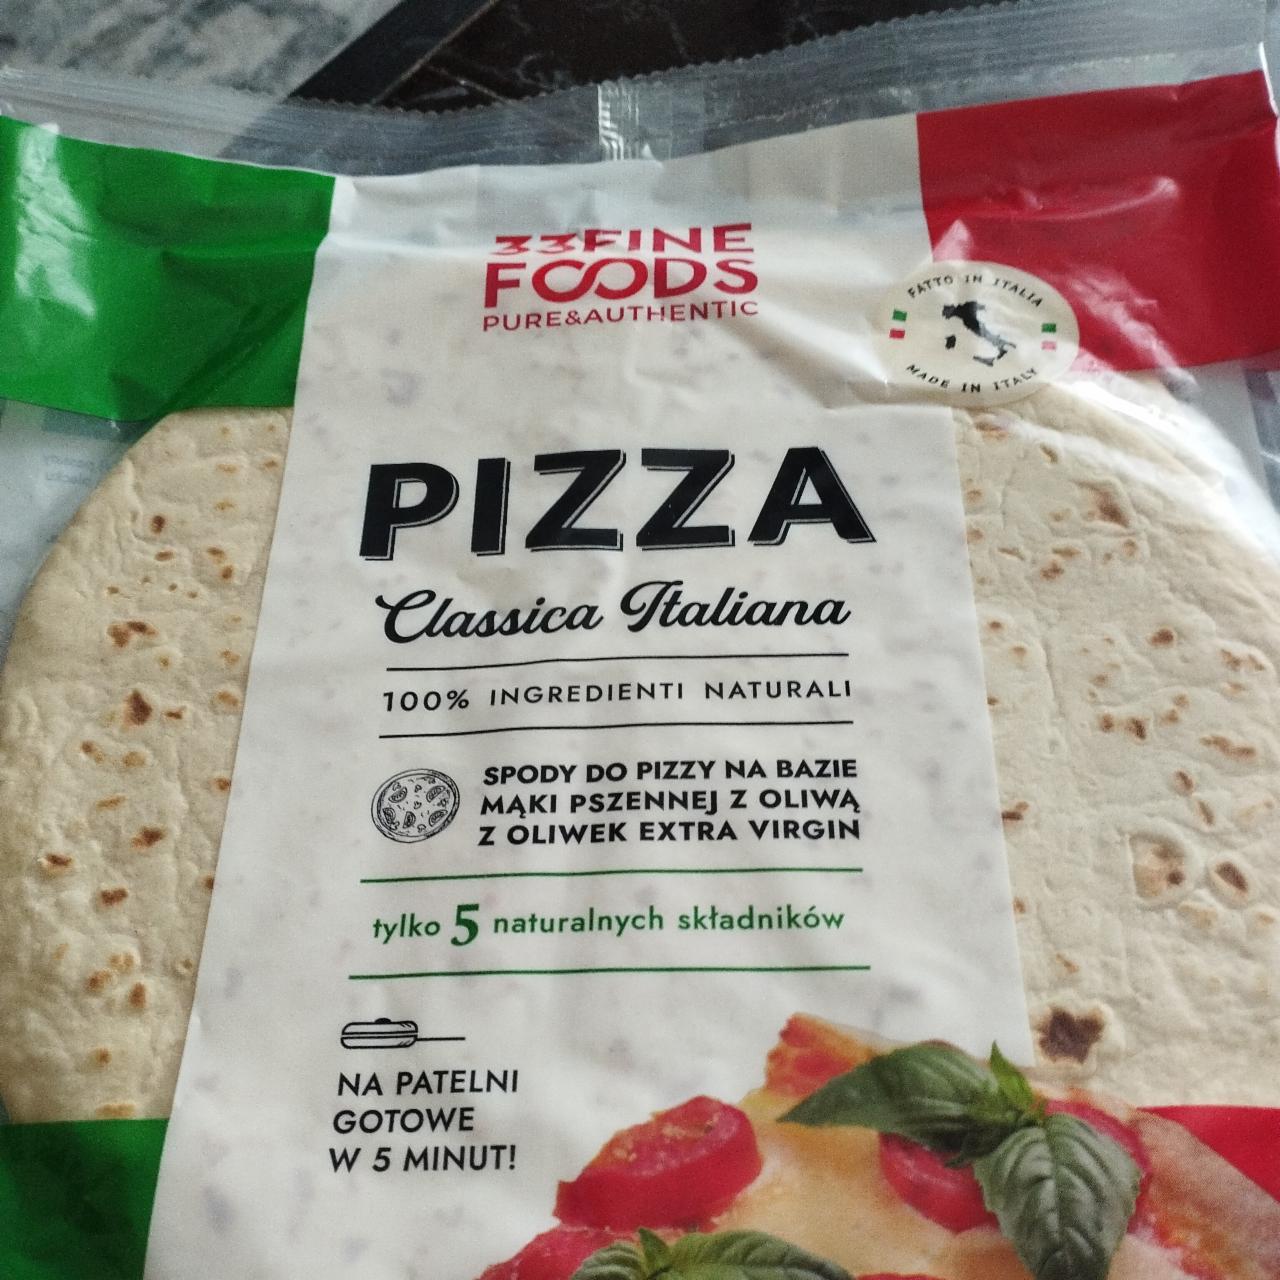 Zdjęcia - pizza classica italiano spody do pizzy 33 Fine Foods